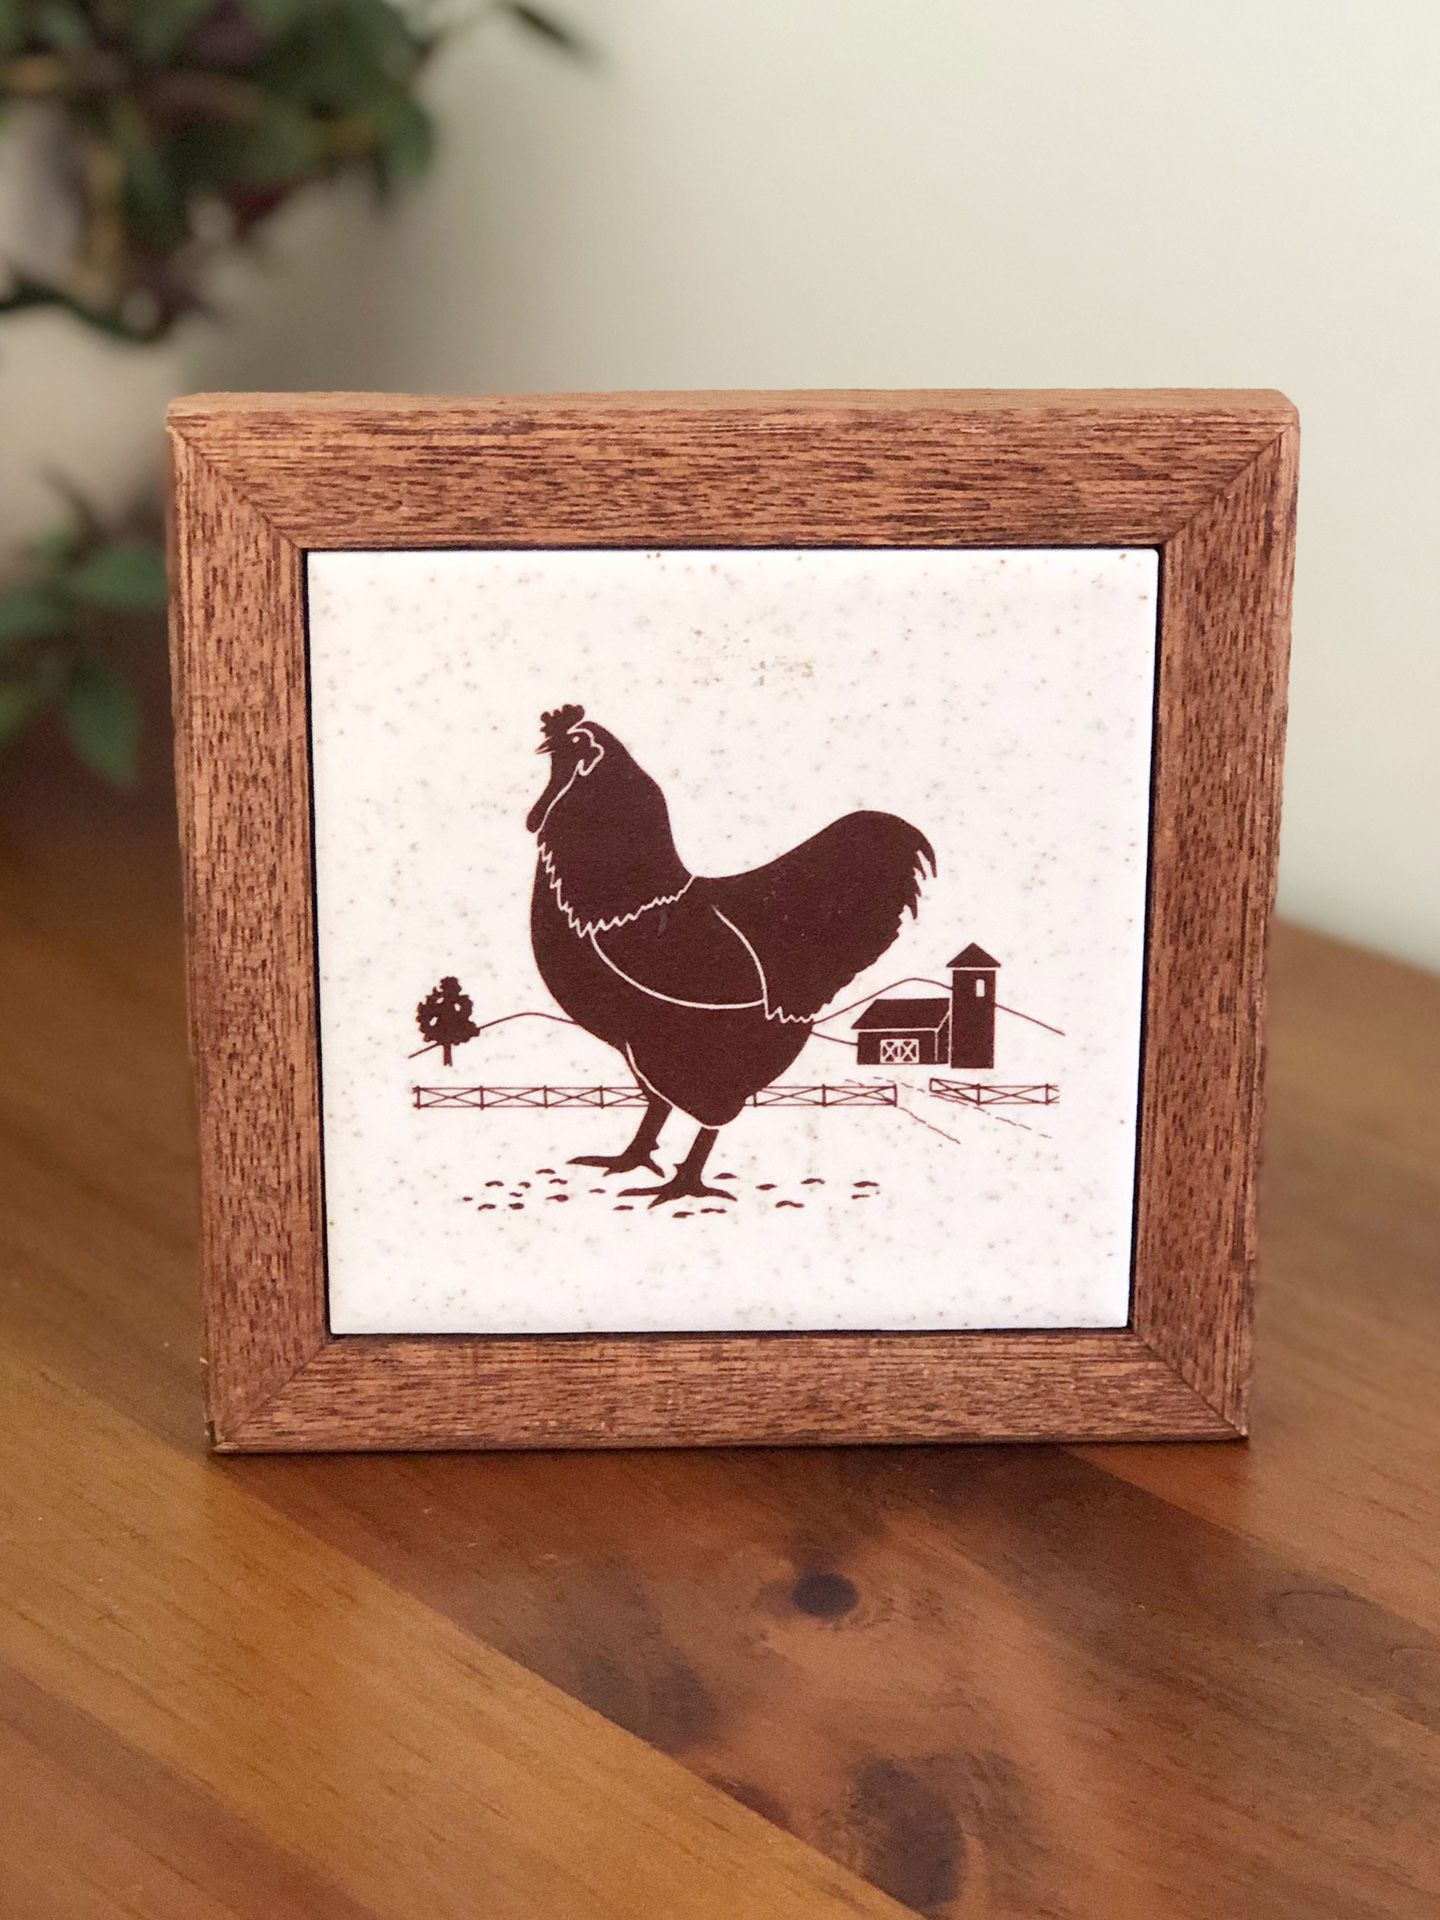 Wood framed tile trivet with rooster / 5.5”x5.5”